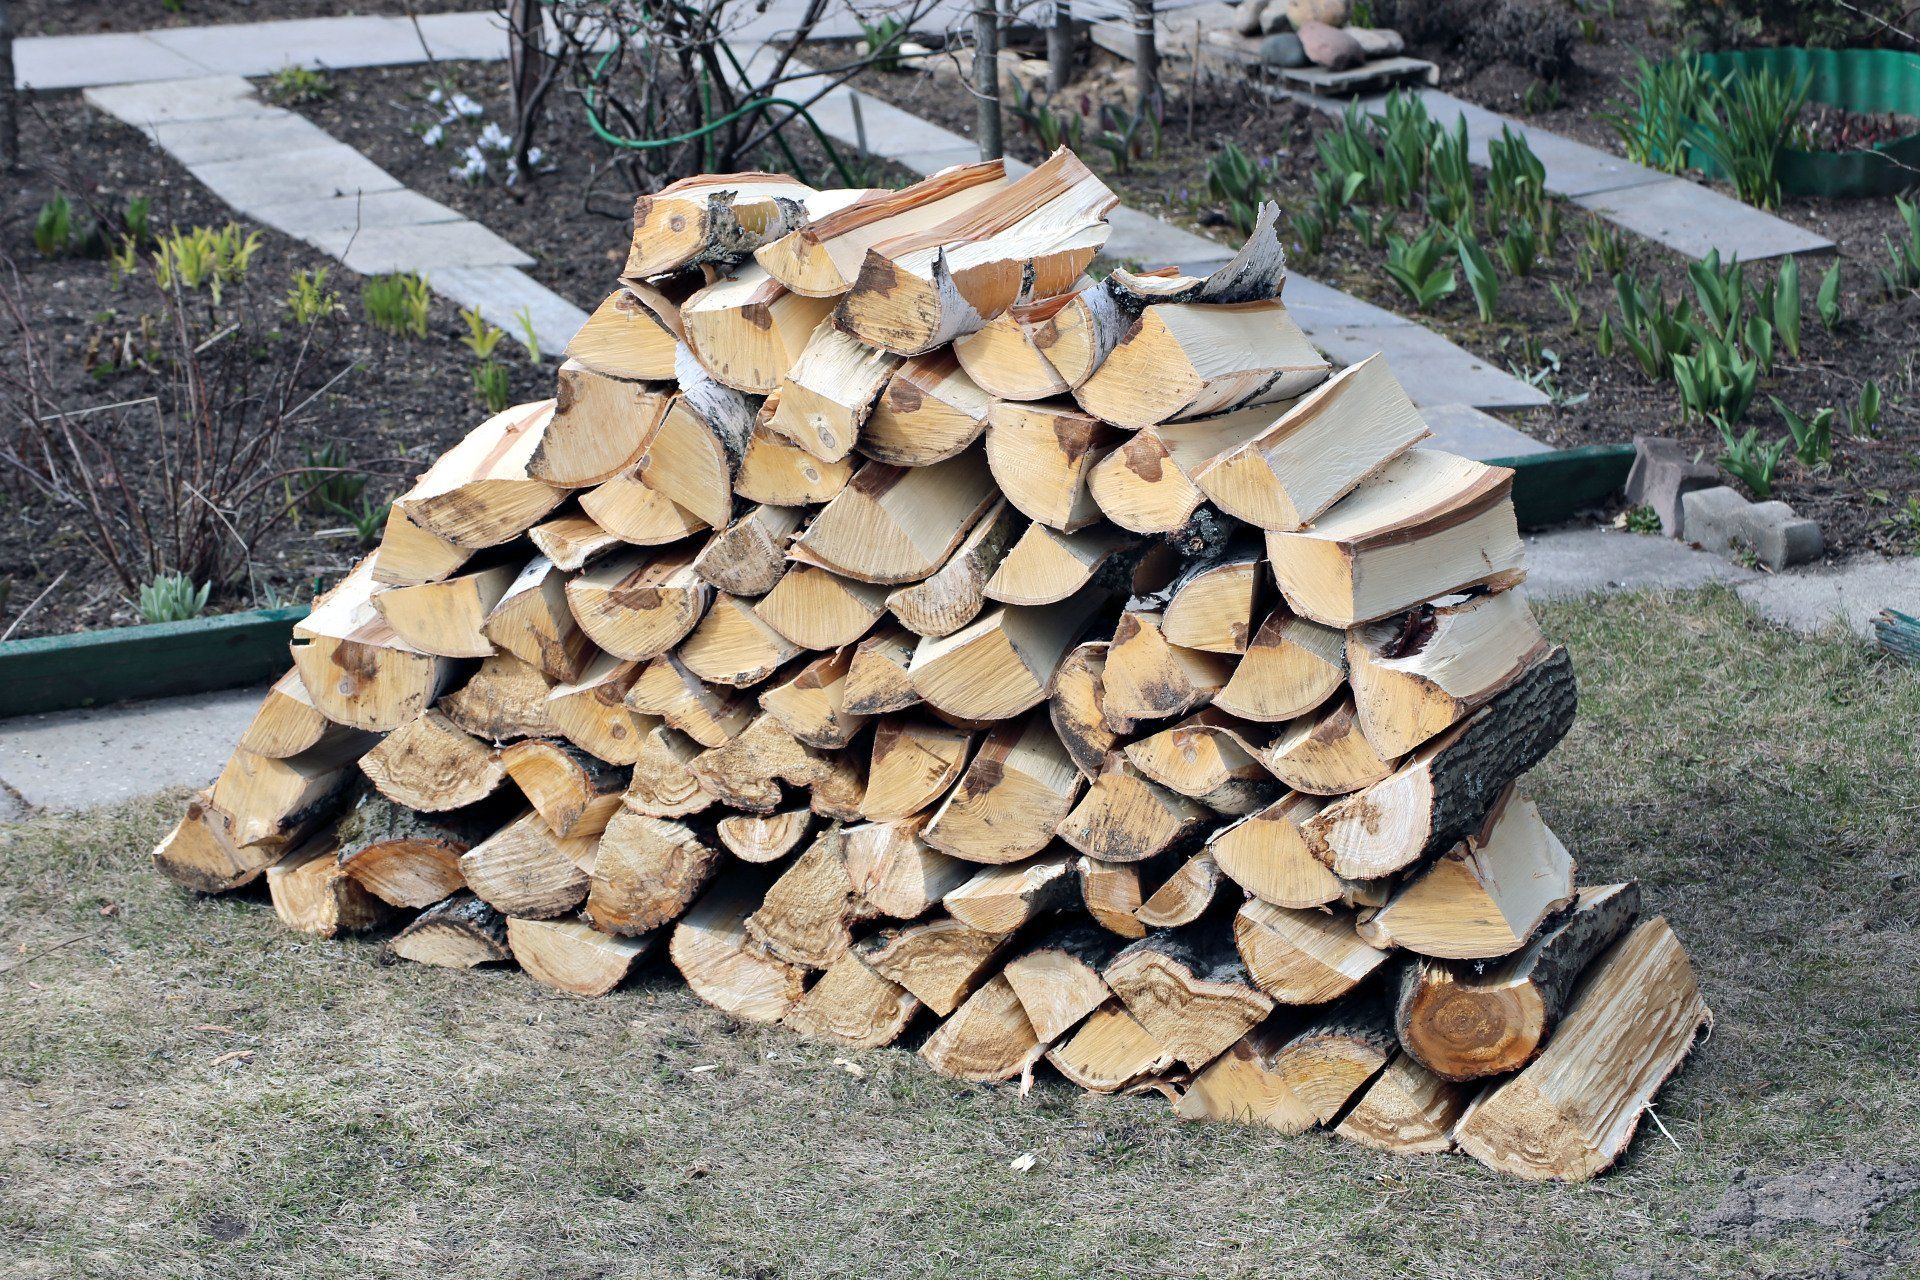 commercial log splitter